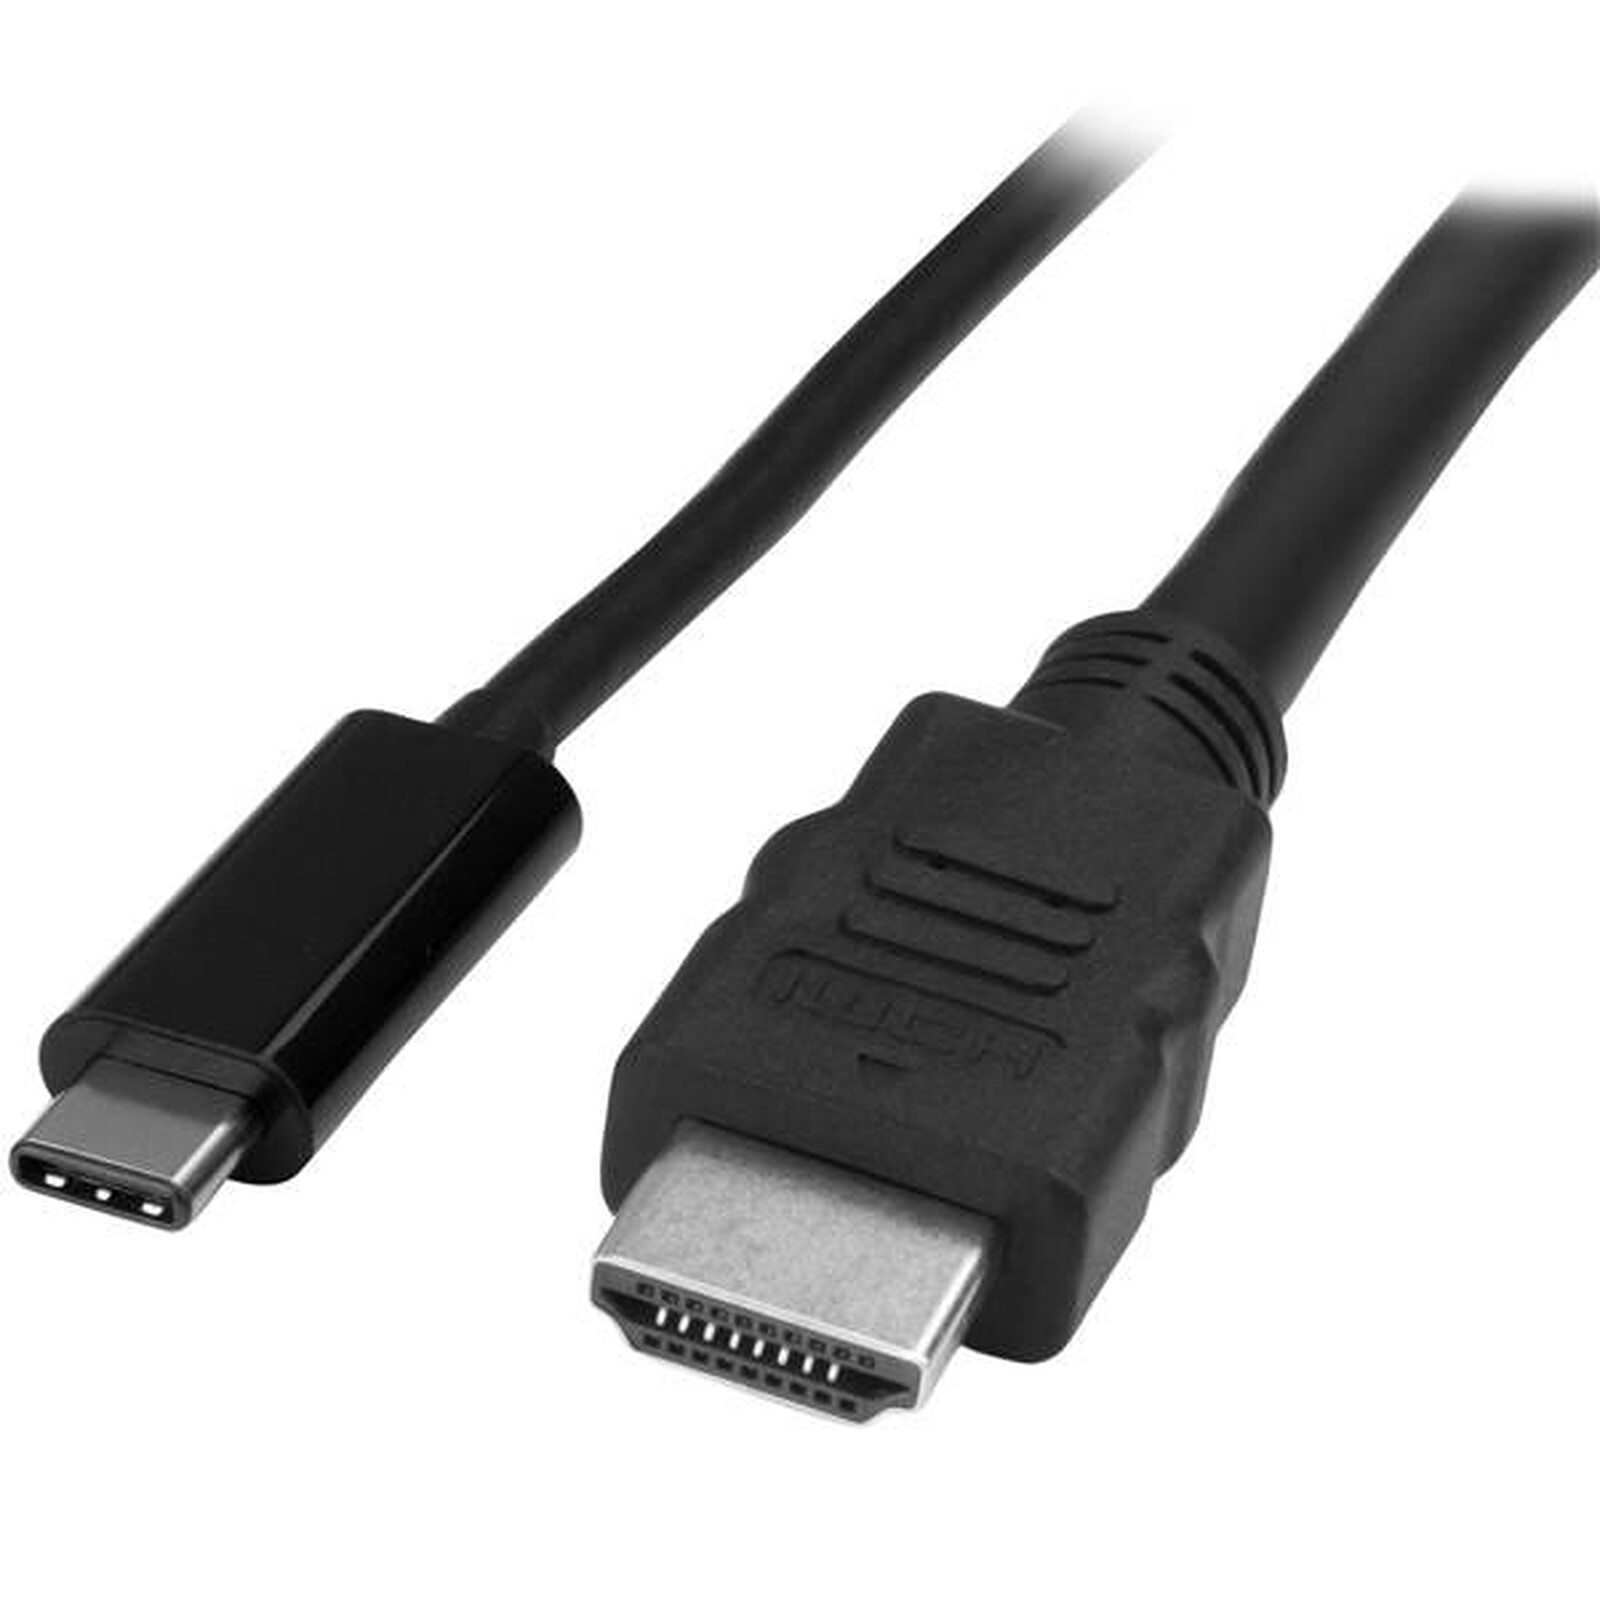 Adaptateur USB-C vers HDMI (4K / 30hz), VGA, USB 3.0 A et USB C par Douxe ©